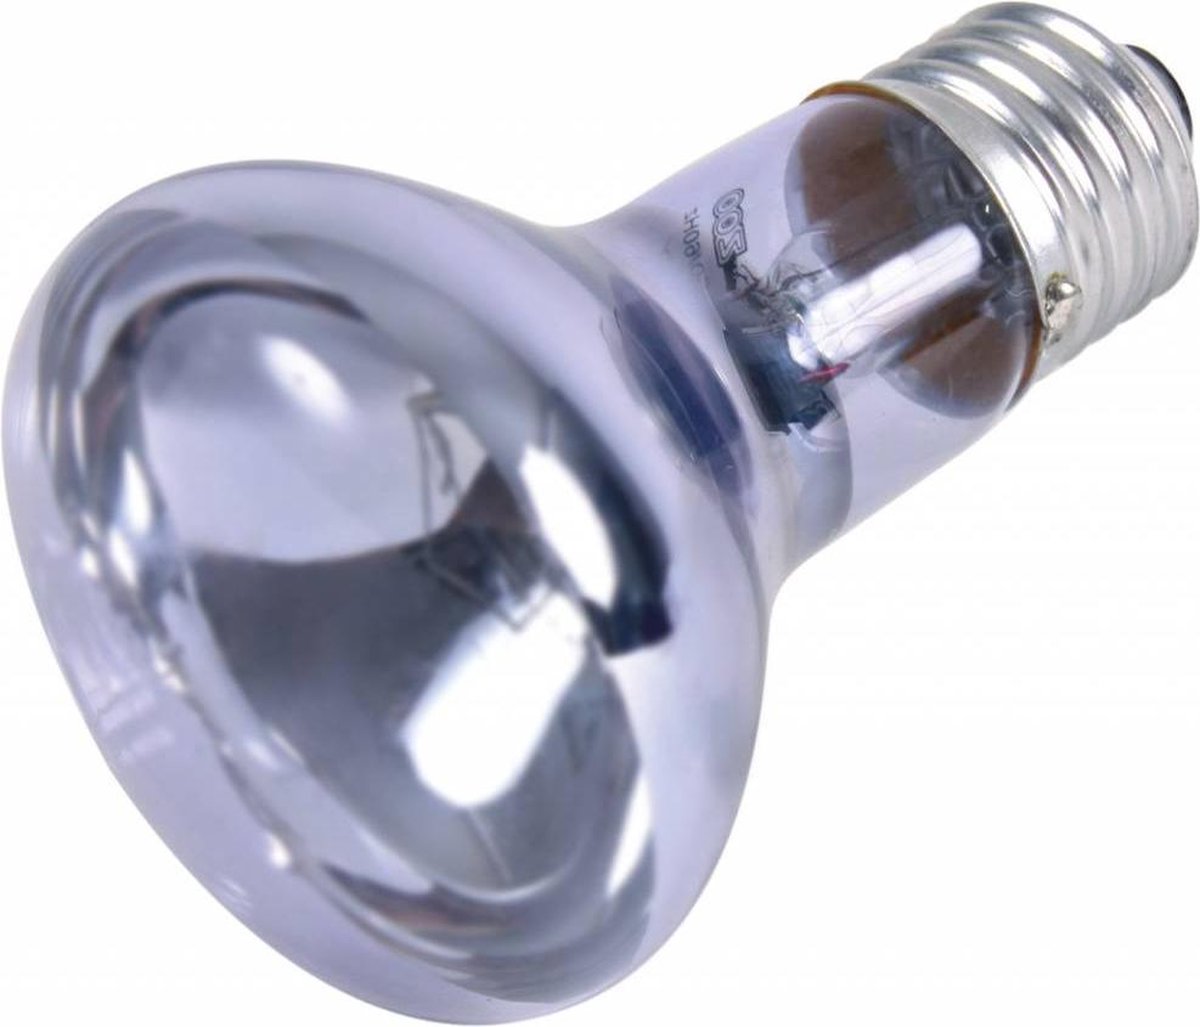 Trixie Reptiland Neodymium Warmtelamp 6,3X6,3X10 CM 35 WATT 3 ST - Trixie